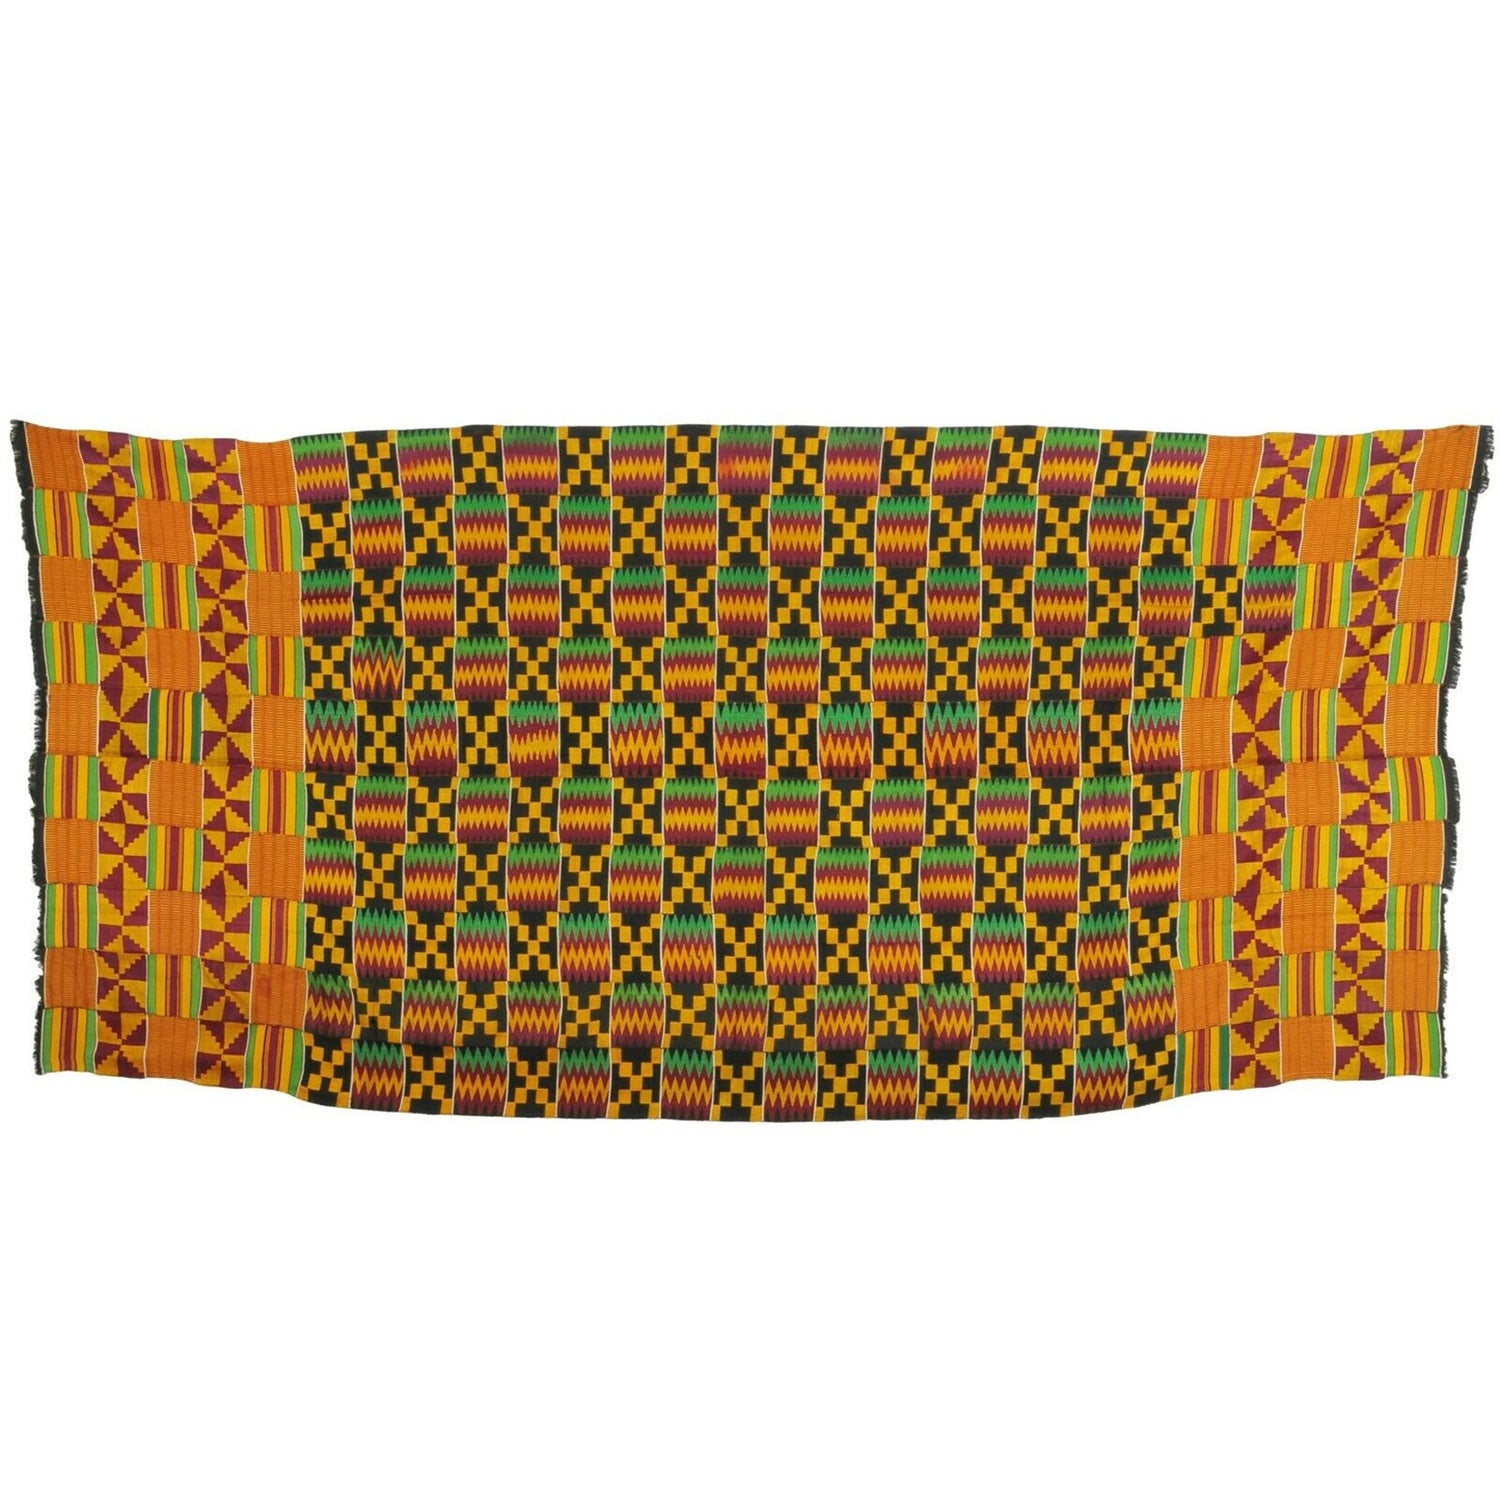 Rare African kente hand woven handmade cloth textile fabric Ashanti Ghana FATHIA - Tribalgh